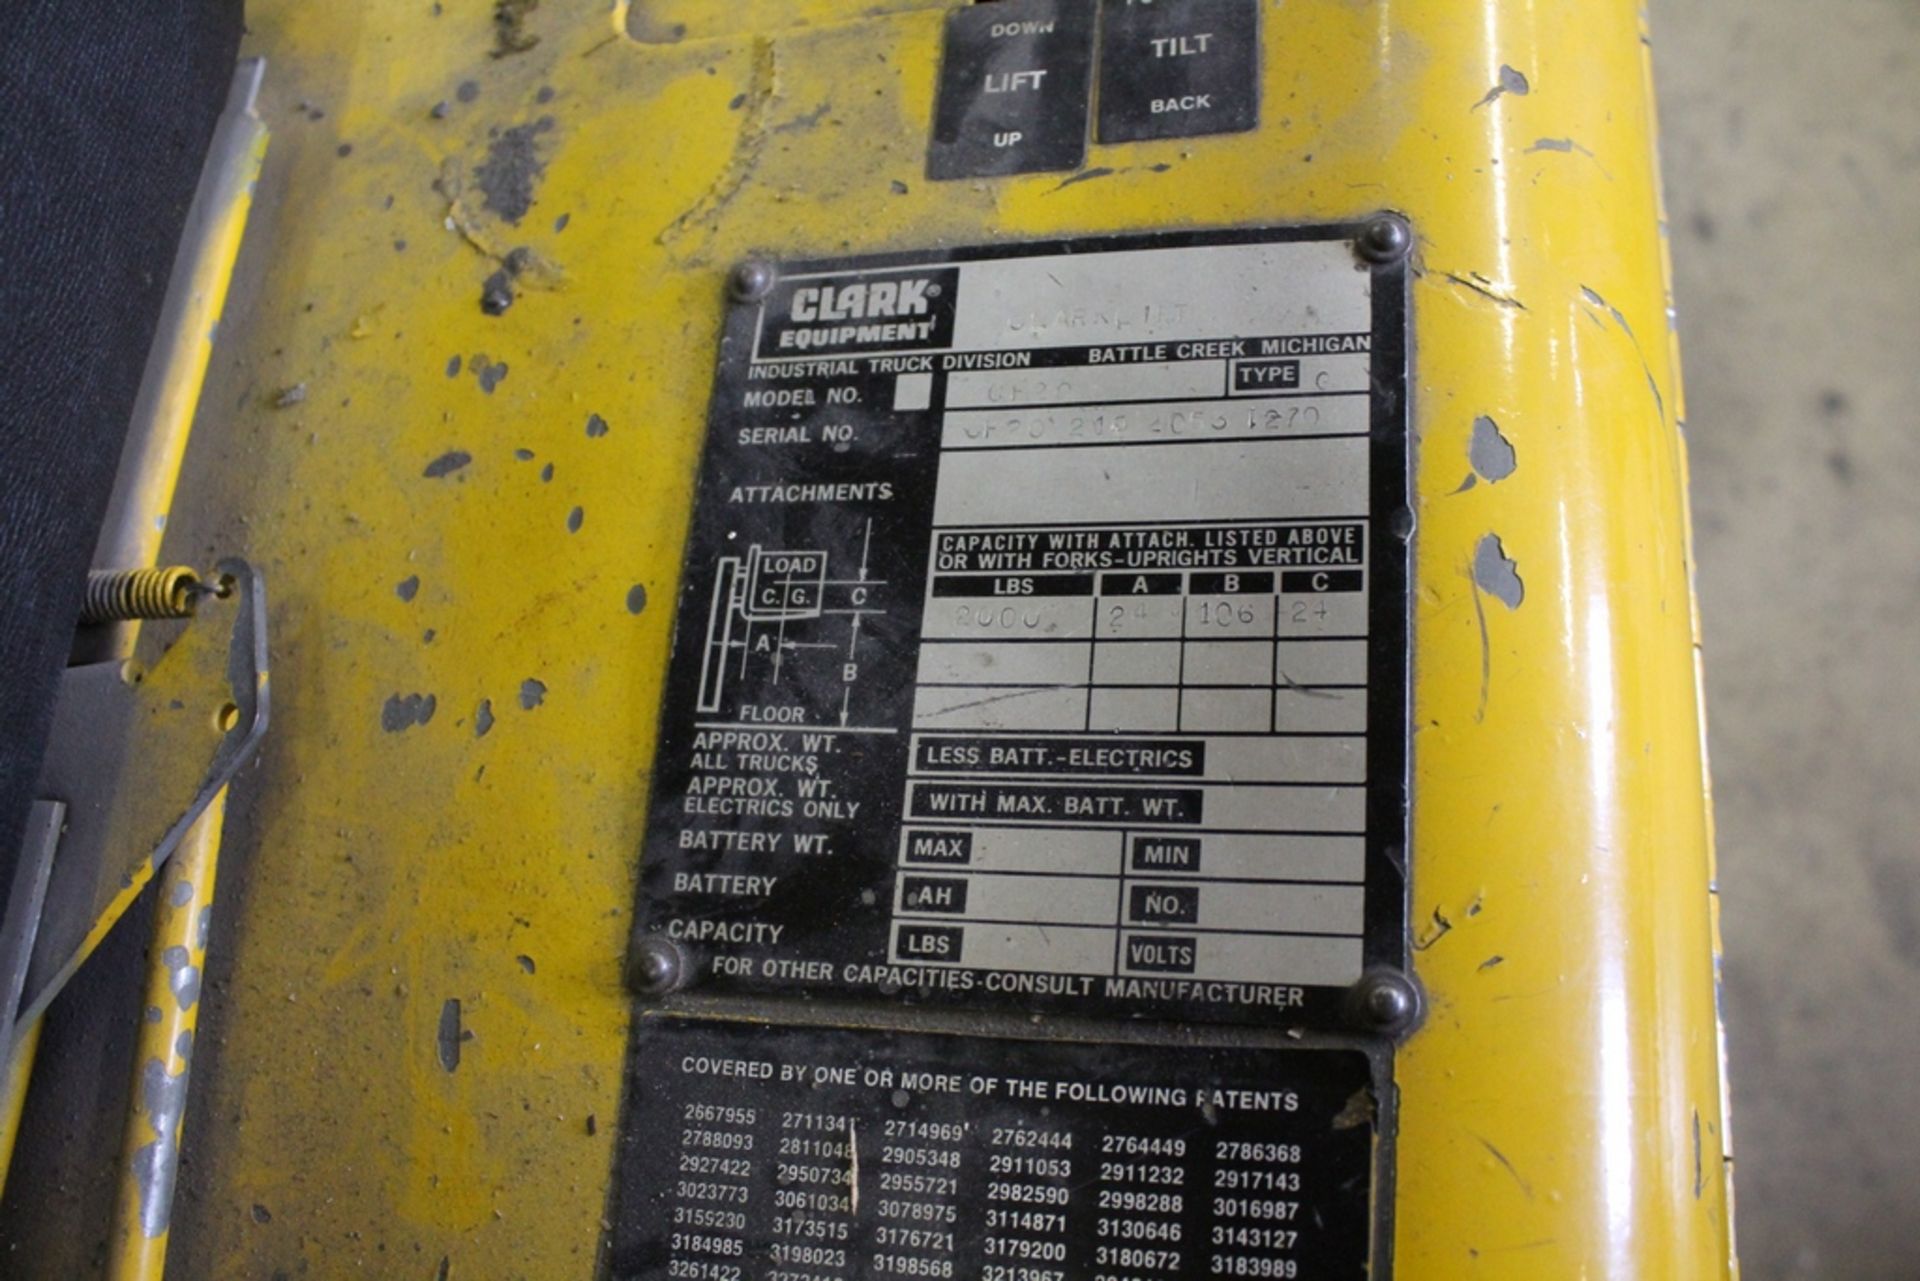 CLARK 2,000 LB. MODEL CF20 LP GAS FORKLIFT TRUCK, S/N 215-2053-1270, 106” MAX LIFT, DUAL MAST - Image 5 of 7